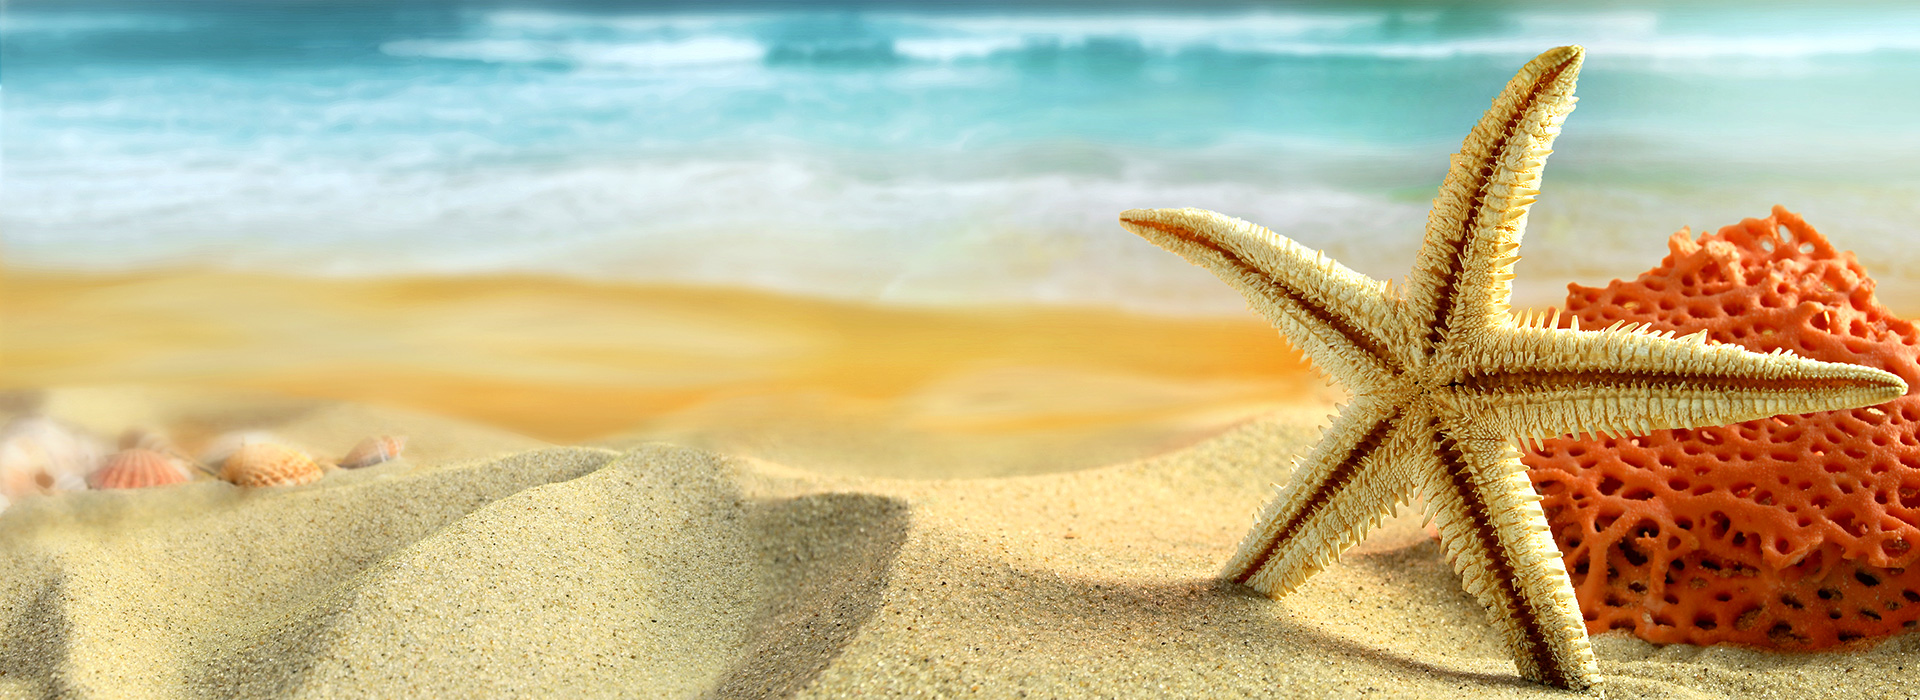 beach-sand-starfish-shells